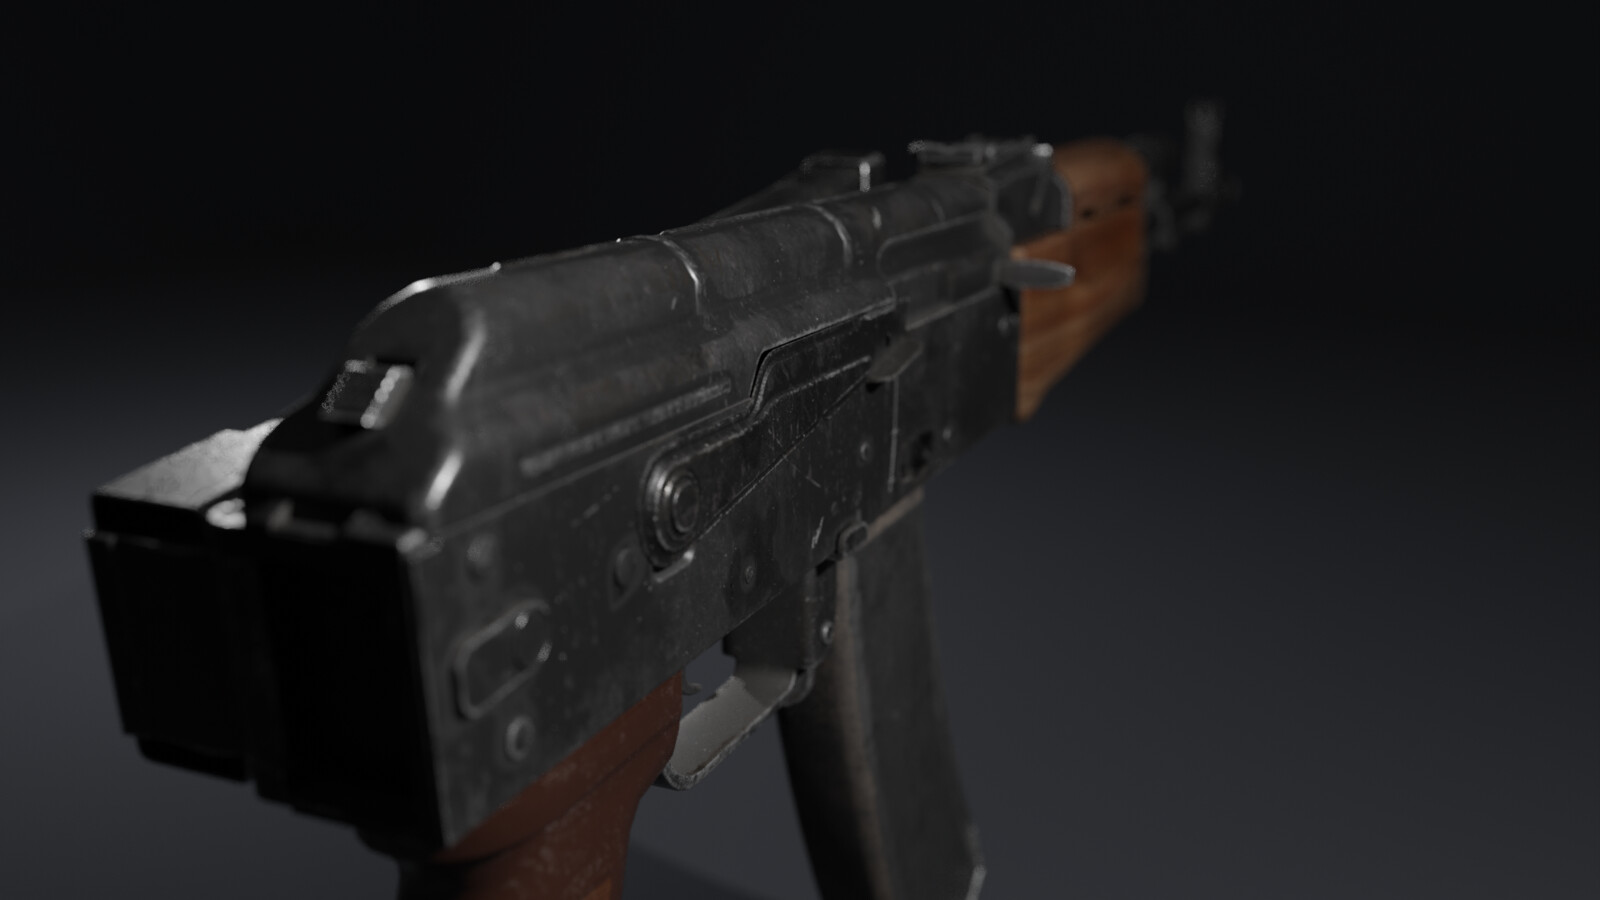 AK-74 (Kalashnikov)